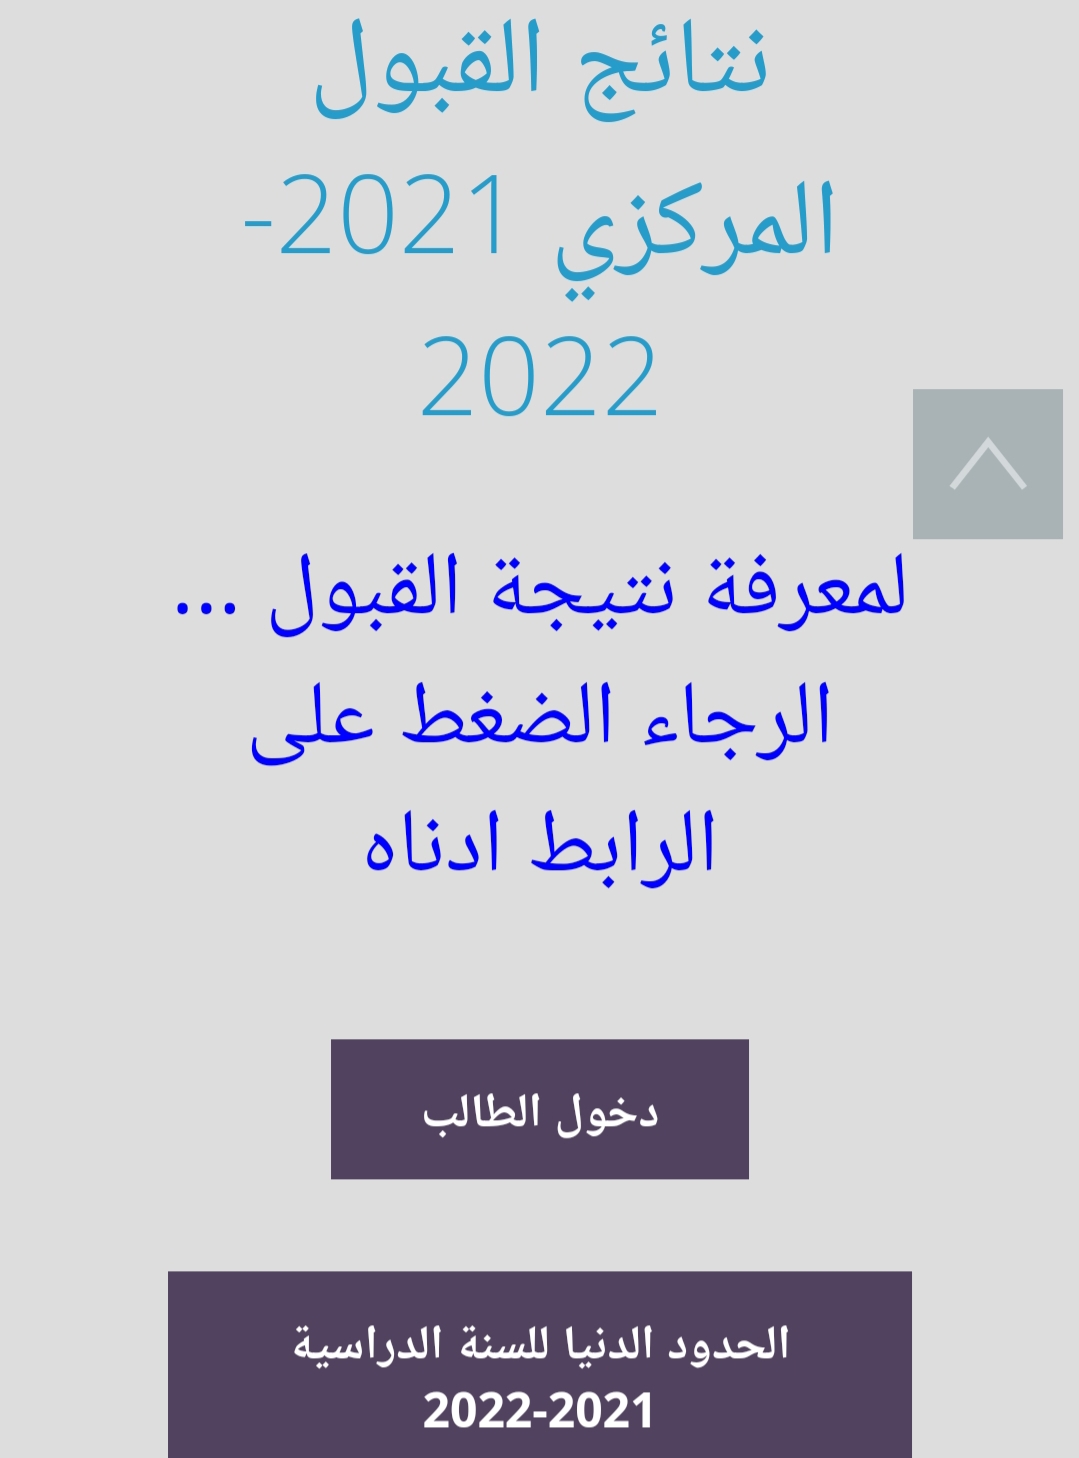 نتائج القبول الموازي 2021 وخطوات الاستعلام عبر رابط وزارة التعليم العراقية